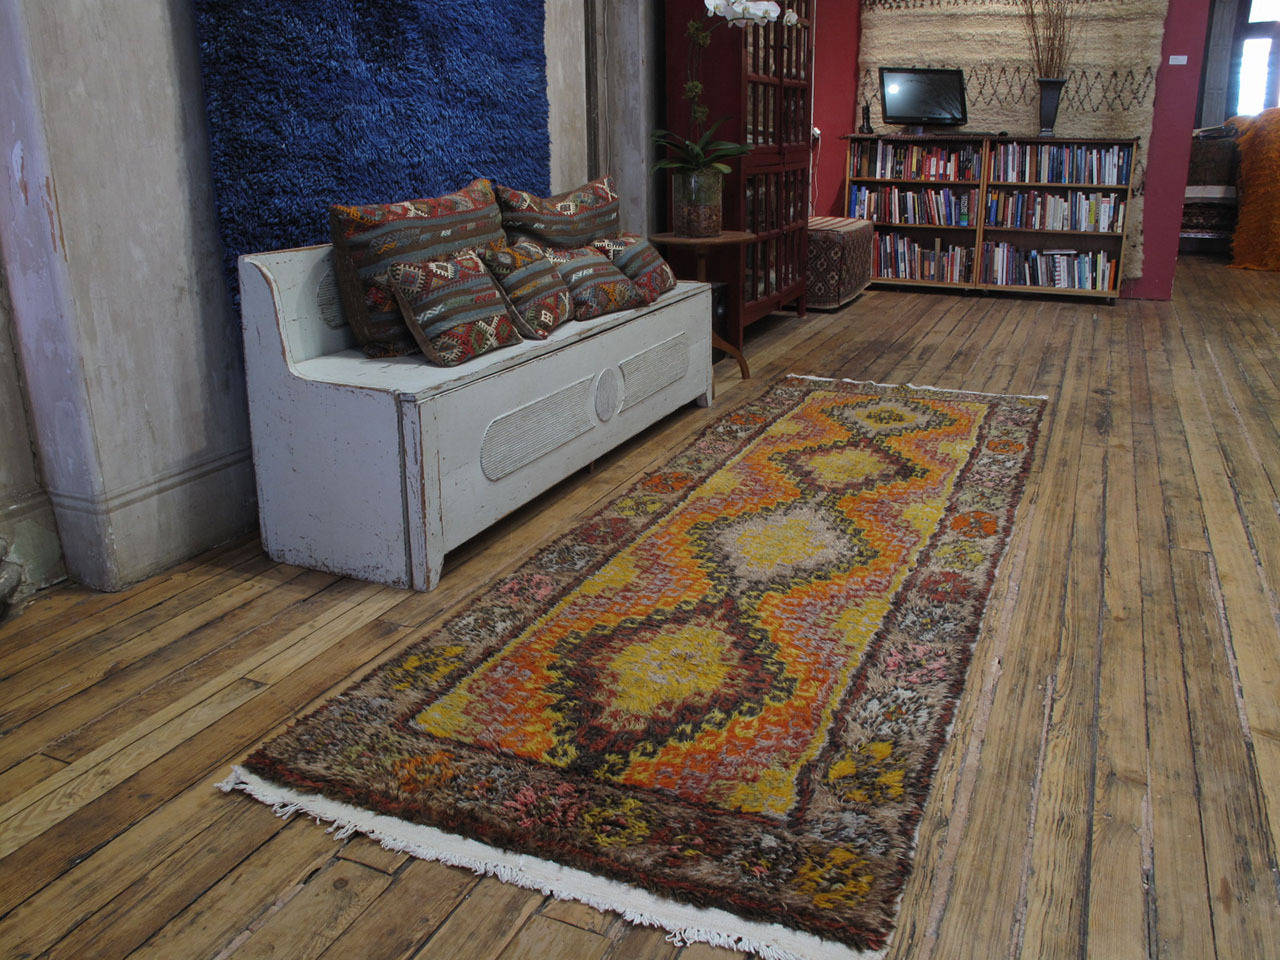 Langer Konya-Teppich oder -Läufer. Ein großartiger alter, zotteliger Dorfteppich aus der Zentraltürkei, gewebt im charakteristischen Langformat, mit einem sehr einfachen und primitiven Muster. Der Teppich hat sehr weiche und glänzende Wolle und eine